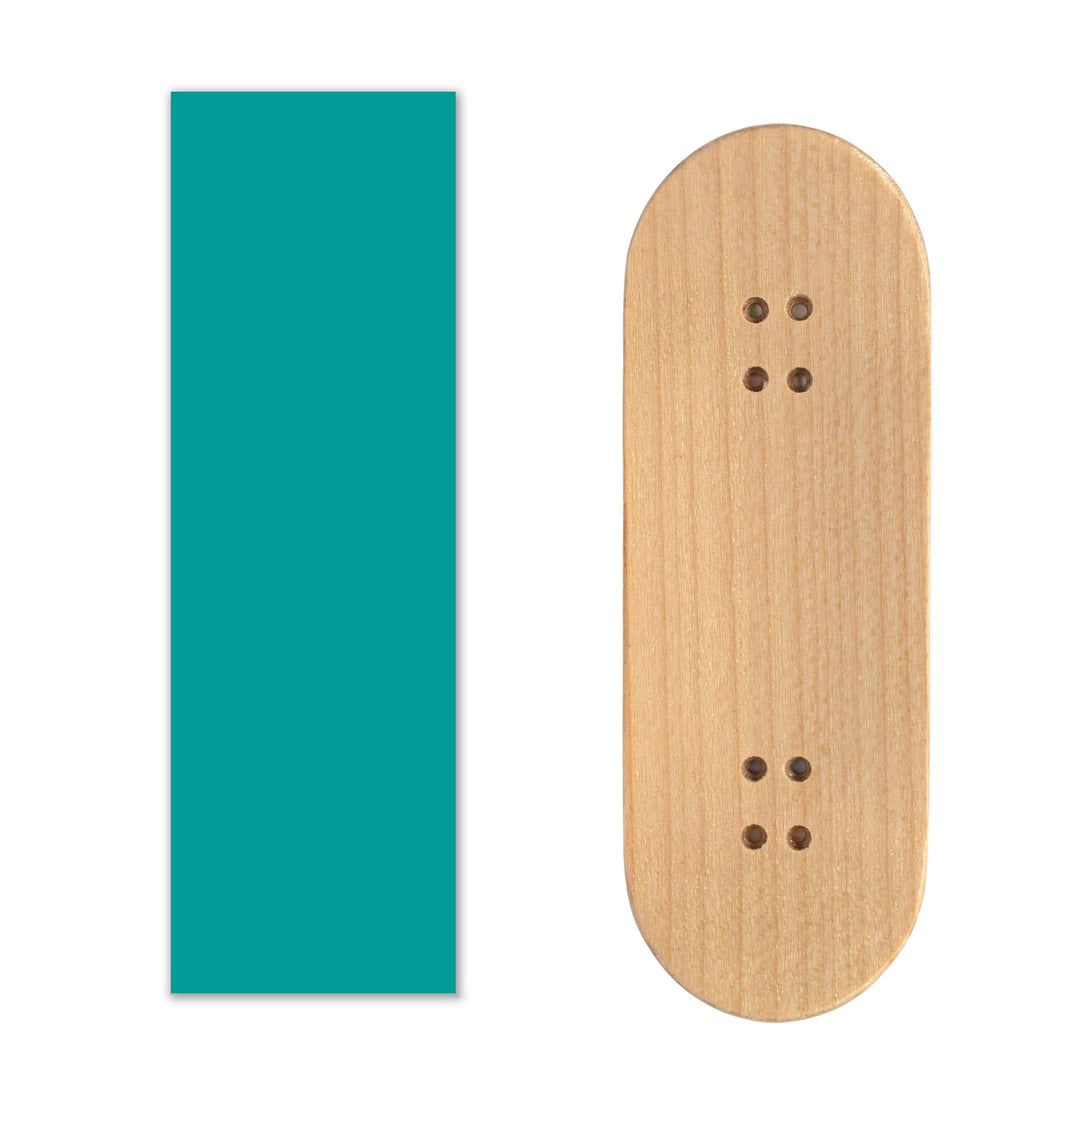 Teak Tuning Teak Swap Fingerboard Deck & ColorBlock Wrap - "Turquoise Tide" - 32mm x 97mm